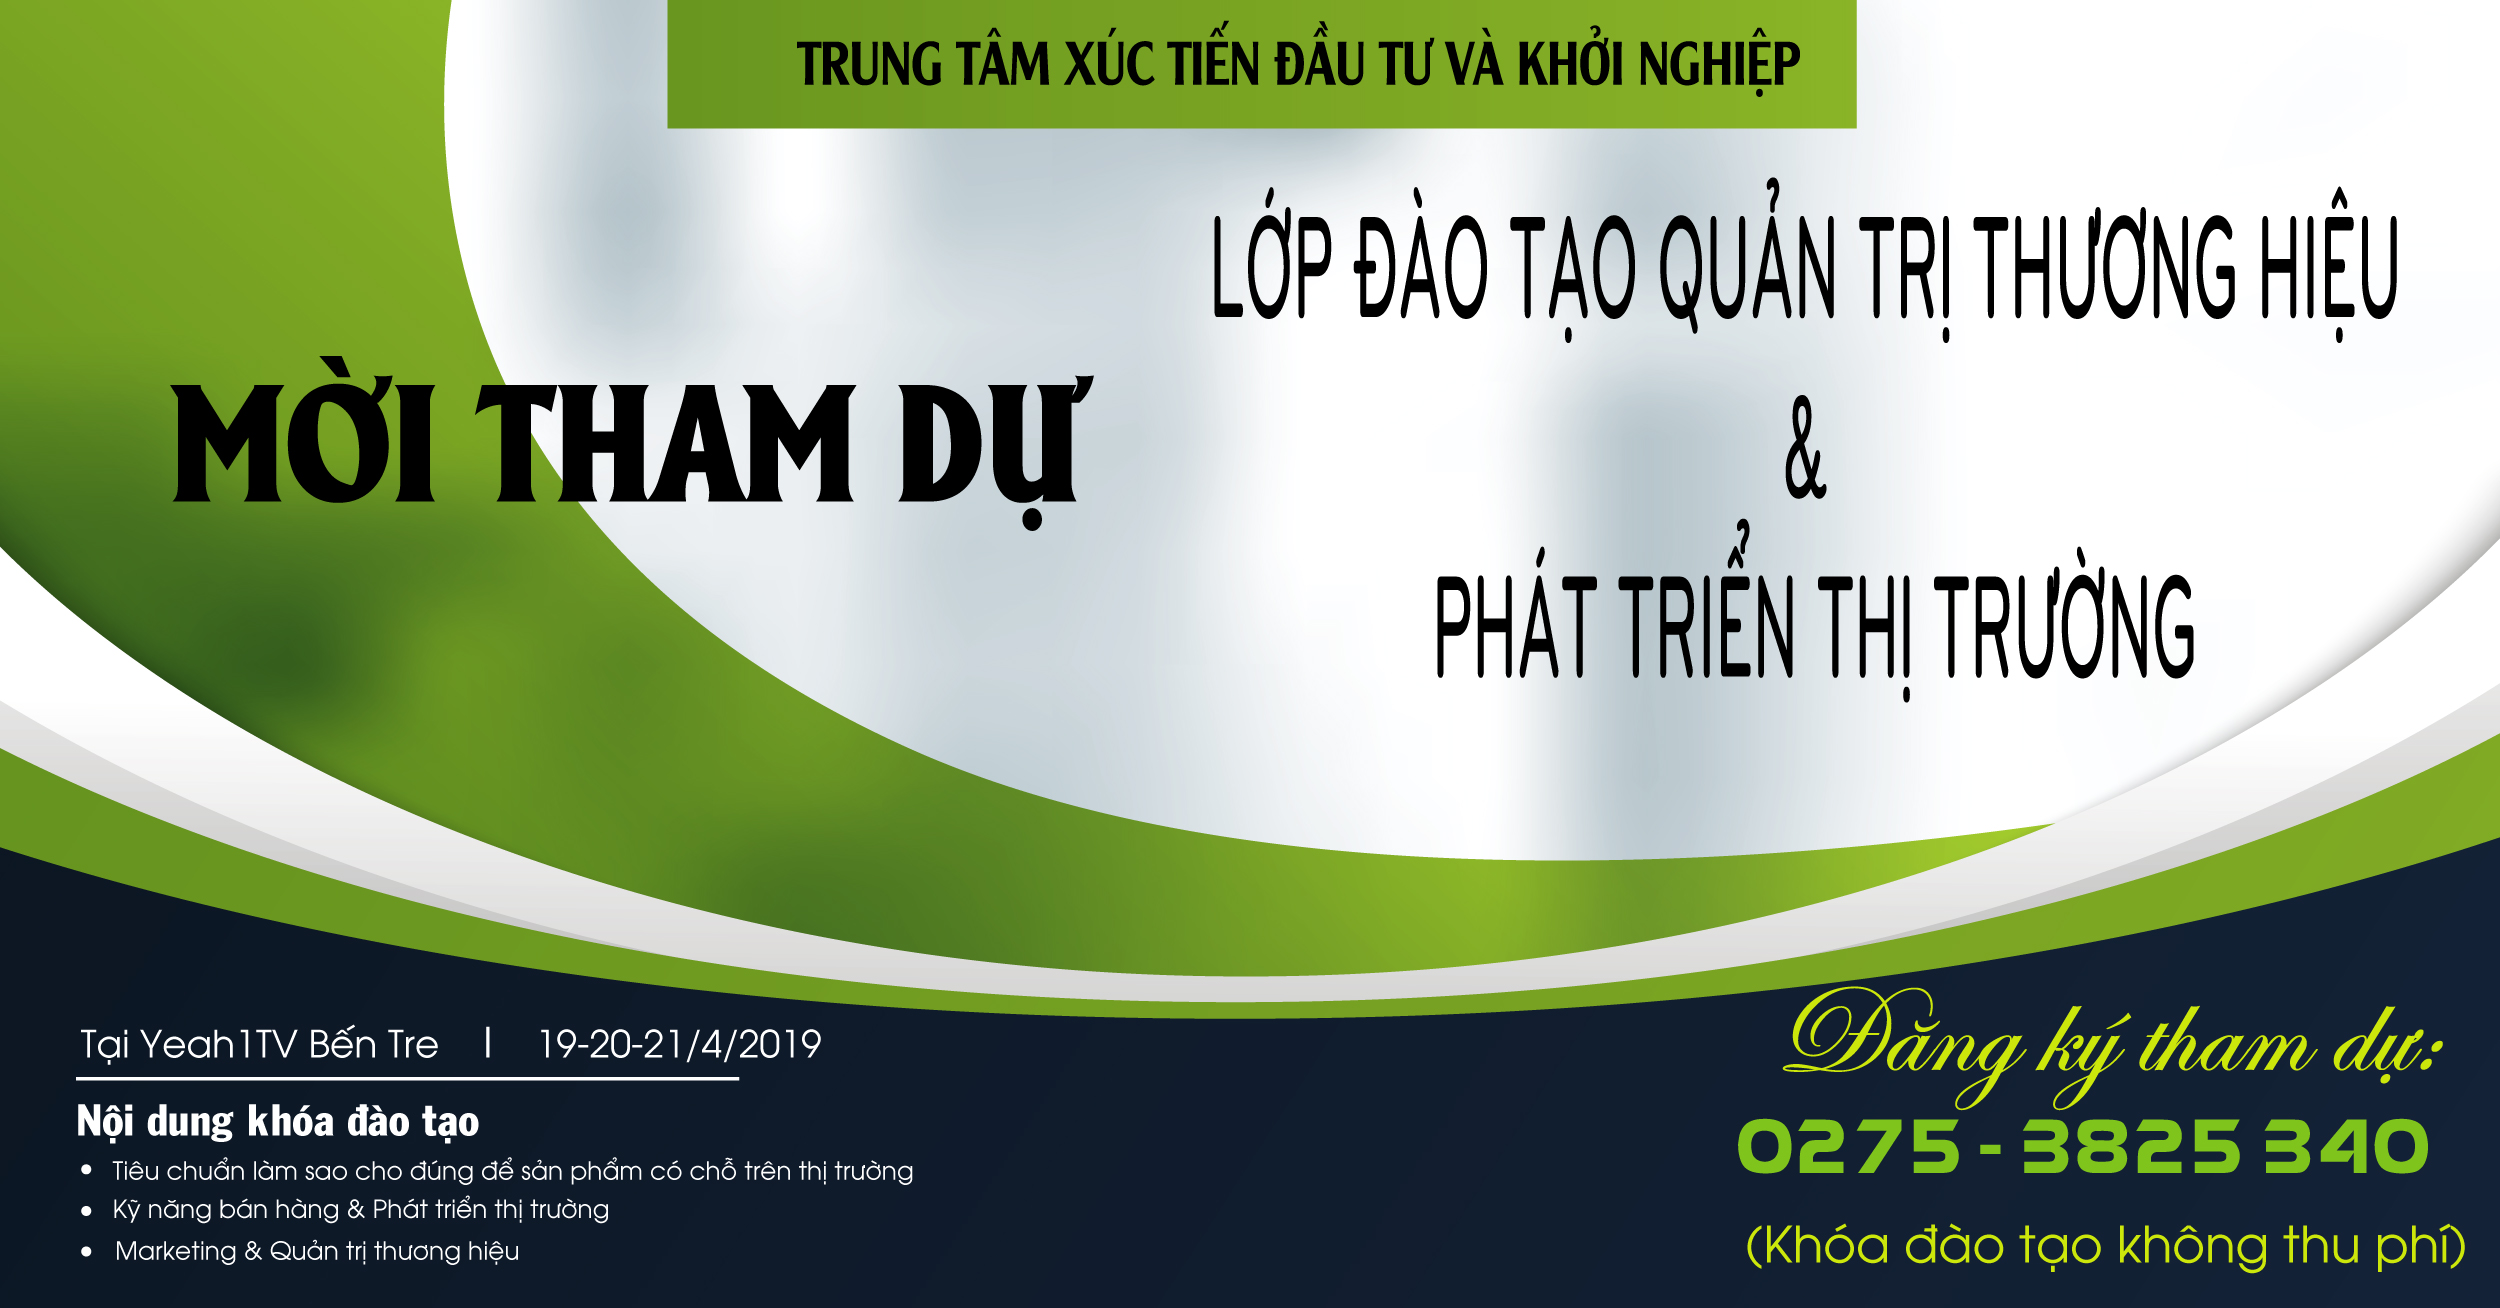 (Tiếng Việt) Mời tham dự - Lớp đào tạo quản trị thương hiệu và phát triển thị trường (19/4/2019)